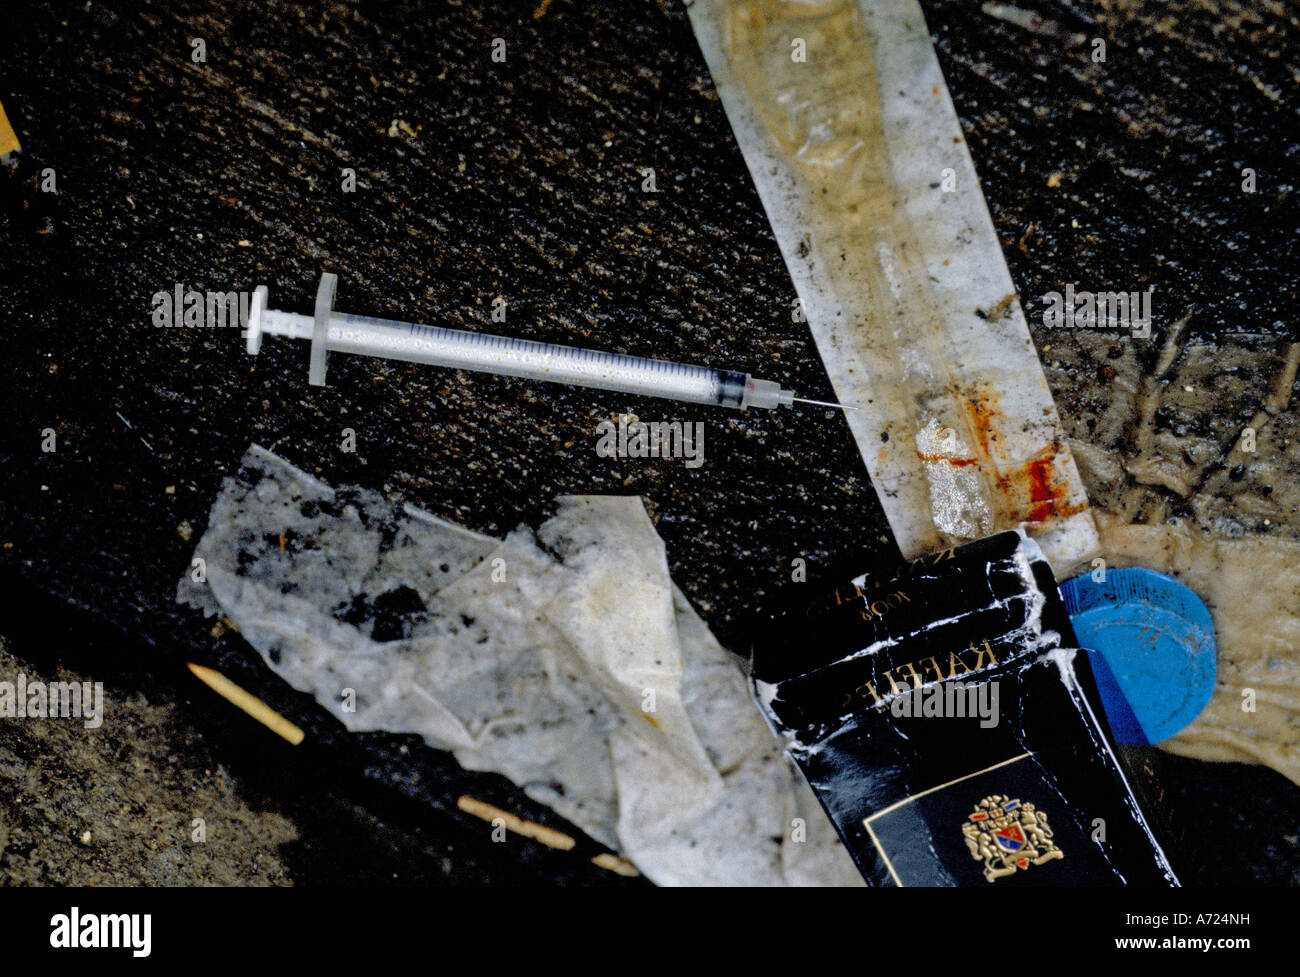 Los detritus del uso indebido de drogas en las callejuelas de Kings Cross Foto de stock